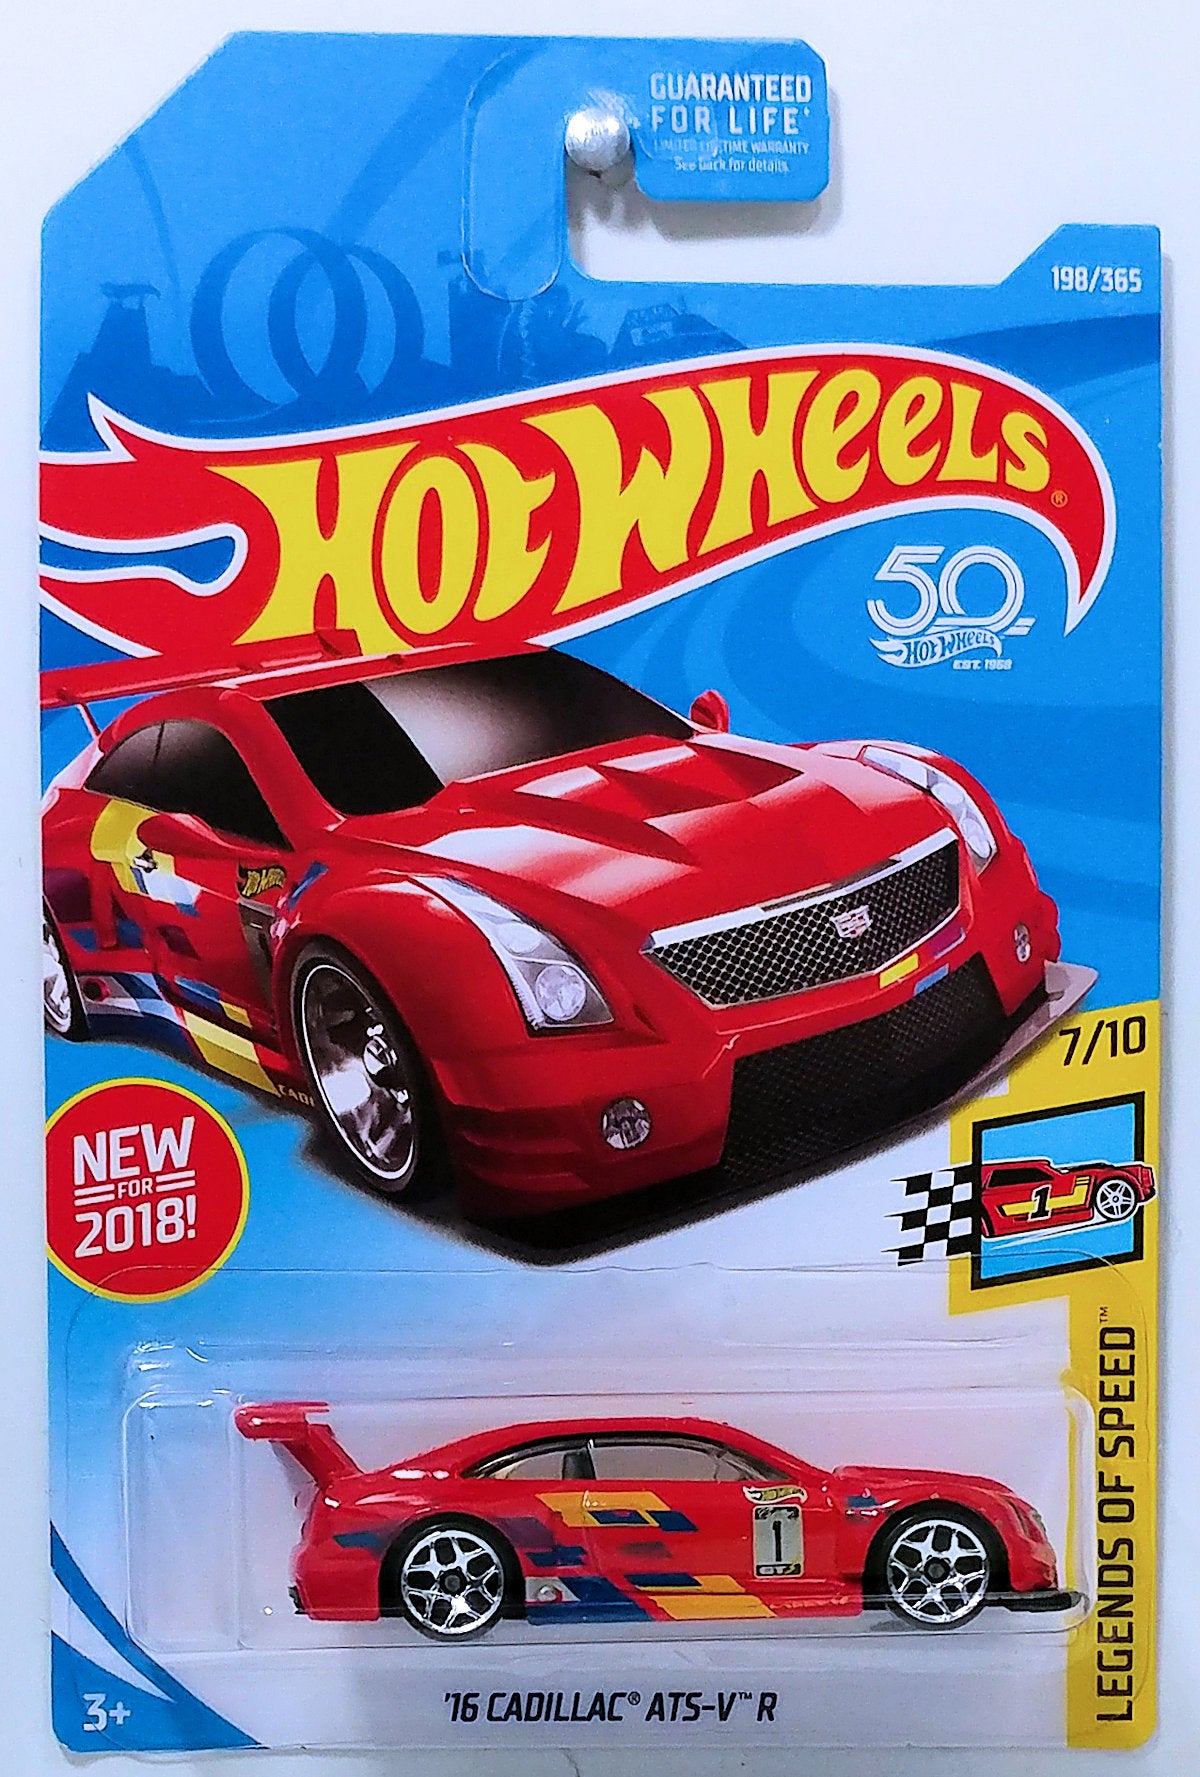 Hot Wheels 2018 - Collector # 198/365 - '16 Cadillac ATS-V R